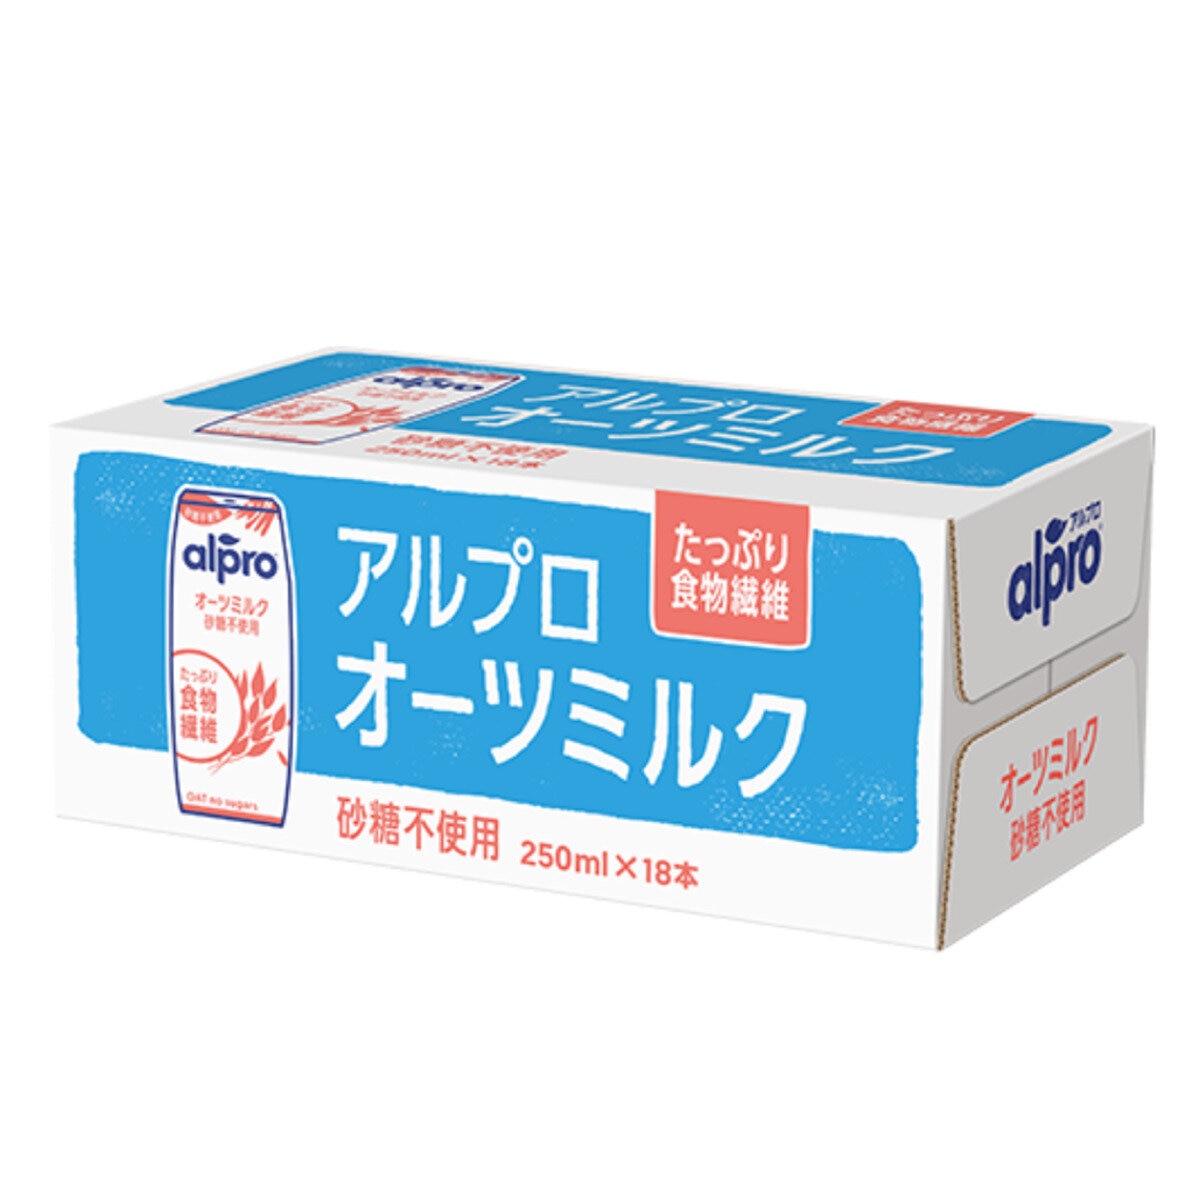 ダノン アルプロ オーツミルク 砂糖不使用 250ml x 18本